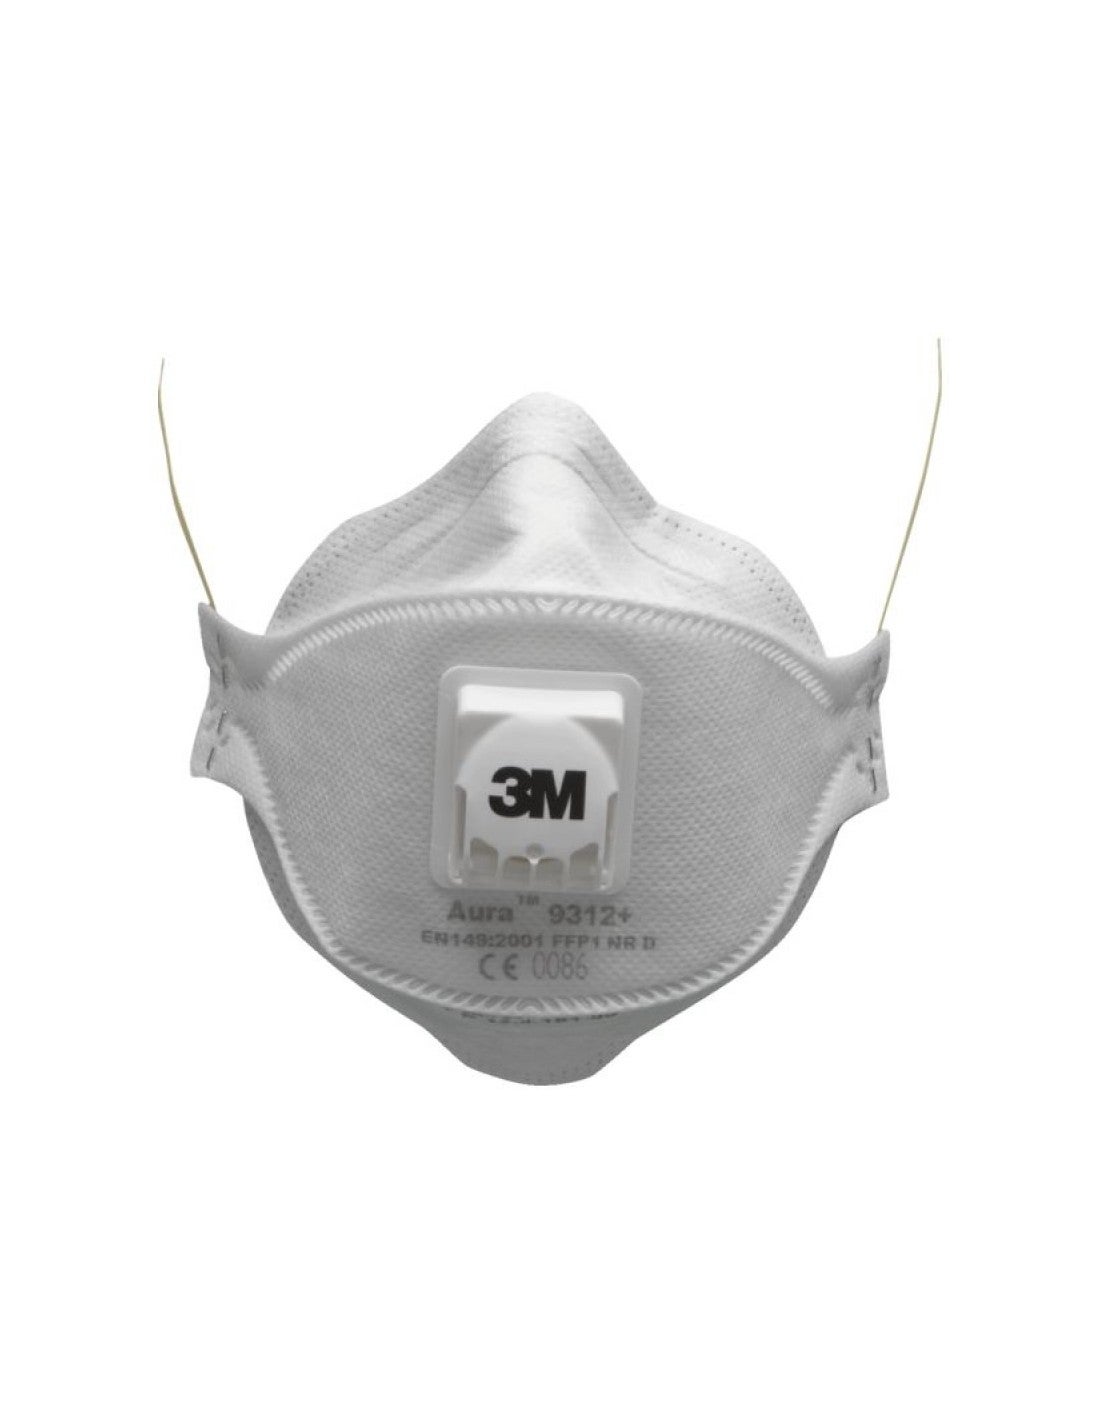 Masque antipoussière coque spécial gaz acides FFP3 R D avec